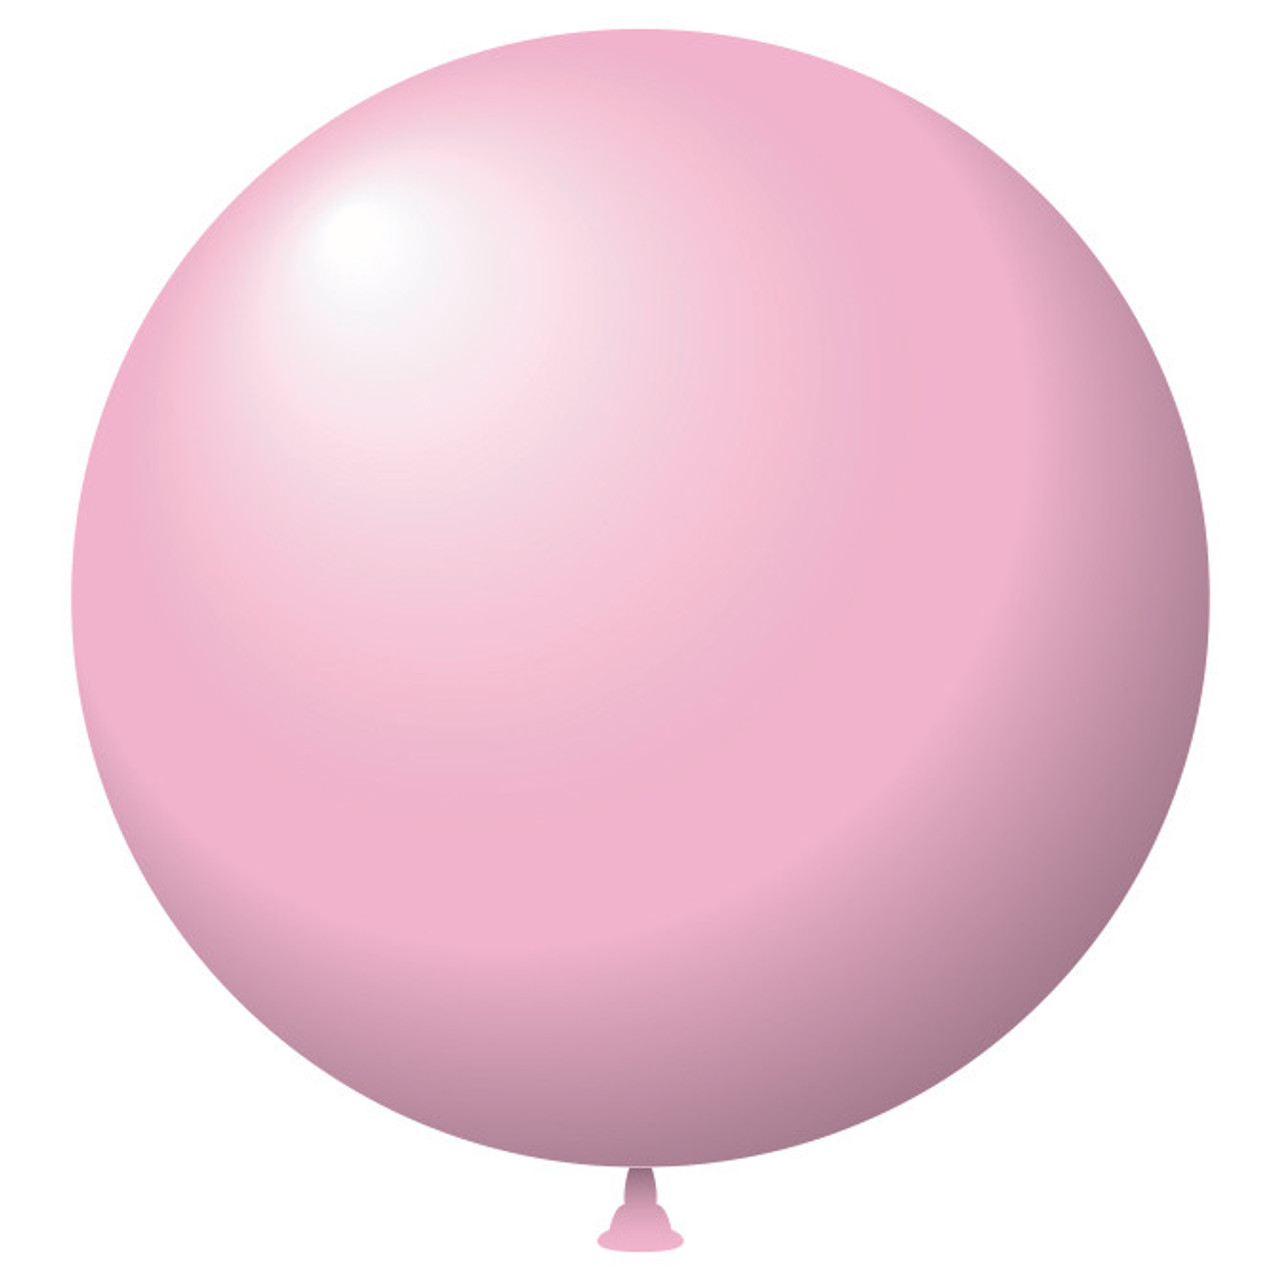 17" Latex Balloons pink